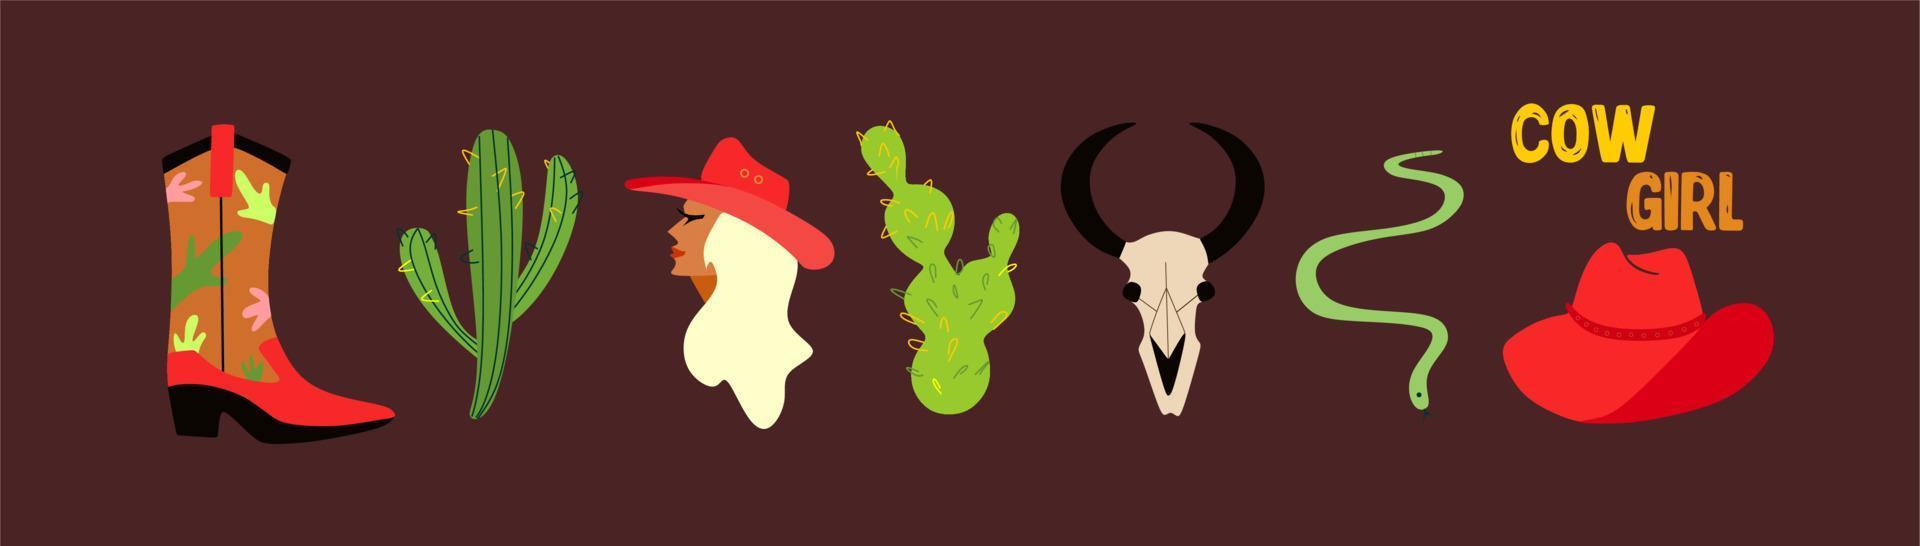 een reeks van tekeningen Aan de thema van de wild westen. een cowboy meisje, drie types van cactussen, een stier schedel, een slang, cowboy laarzen en een hoed. retro illustratie - reeks van elementen. cowboy humeur. vector